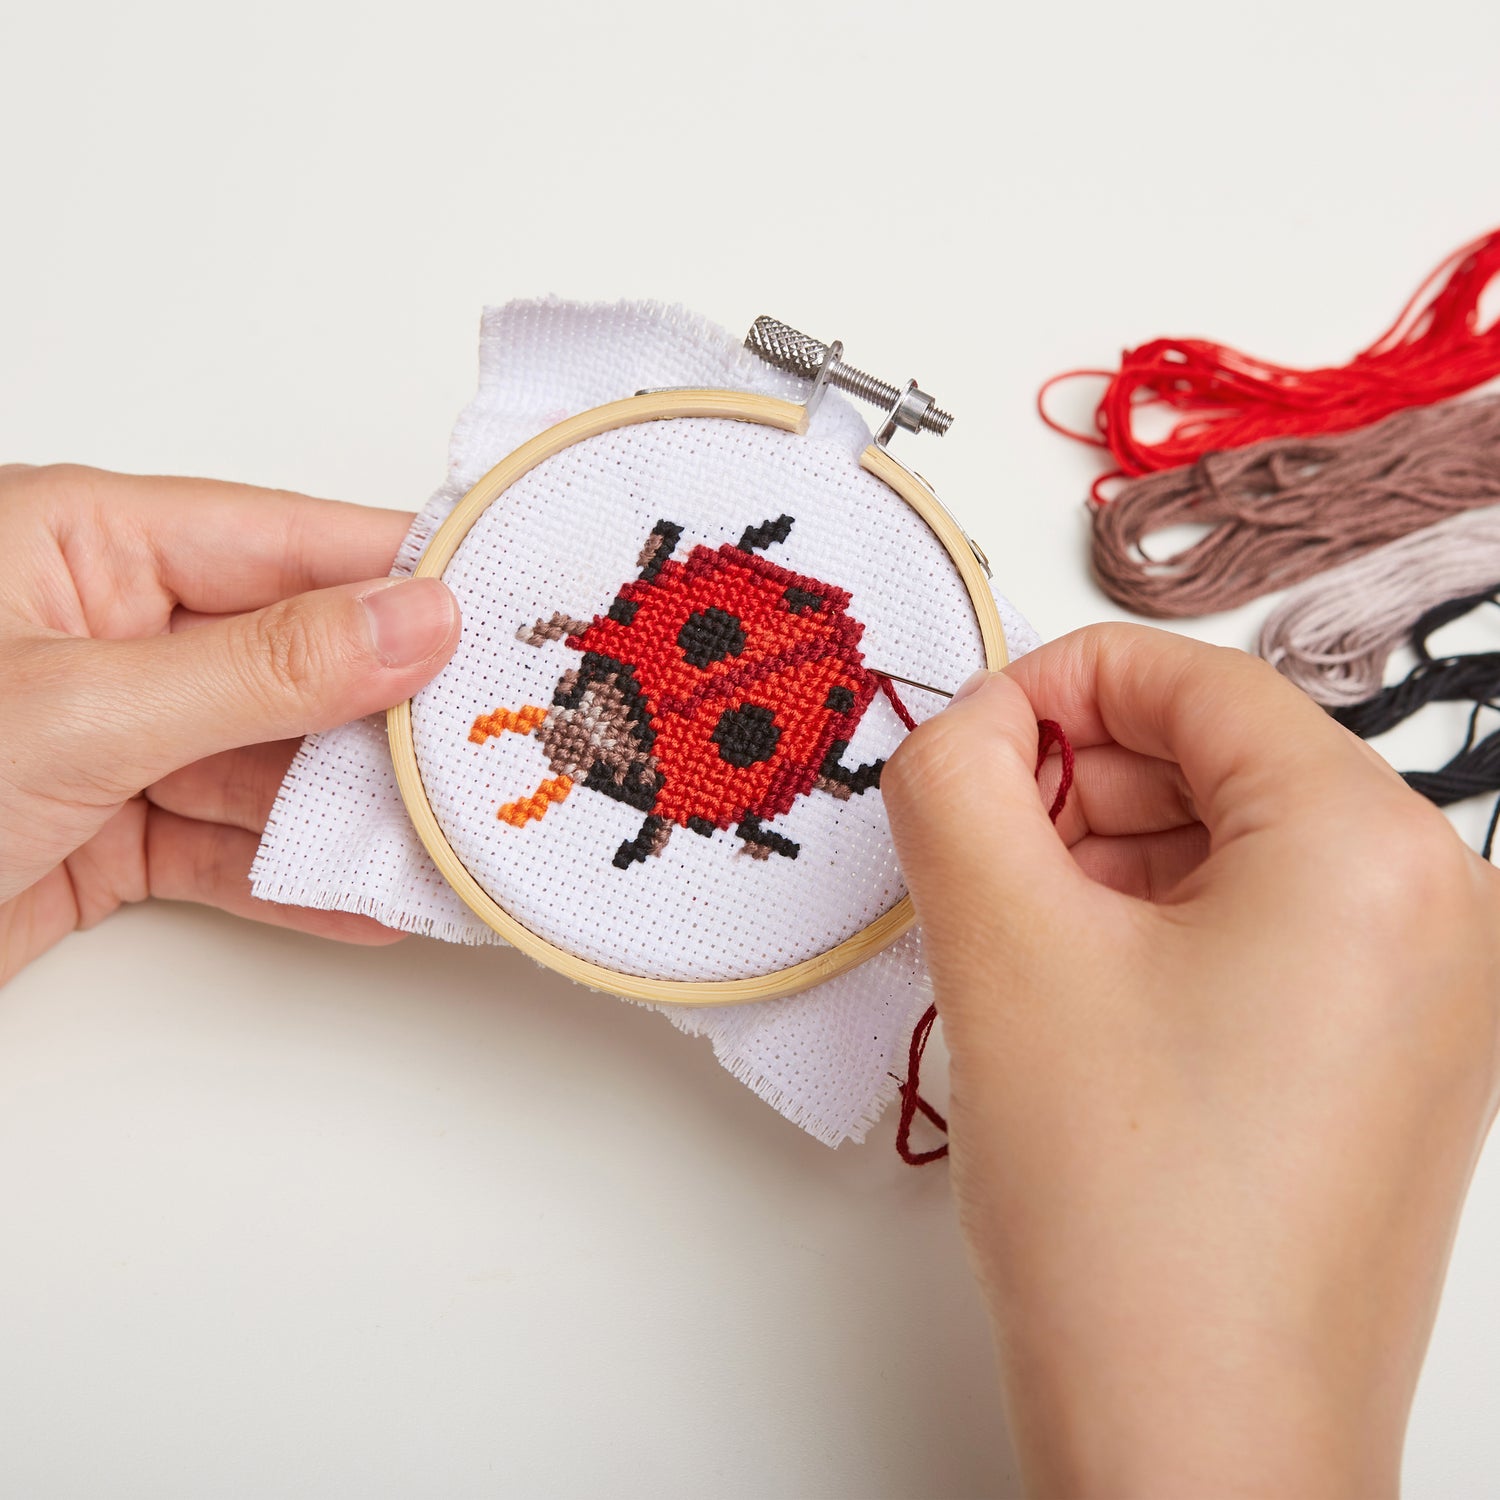 Mini Cross Stitch Embroidery Kit from Kikkerland Mushroom